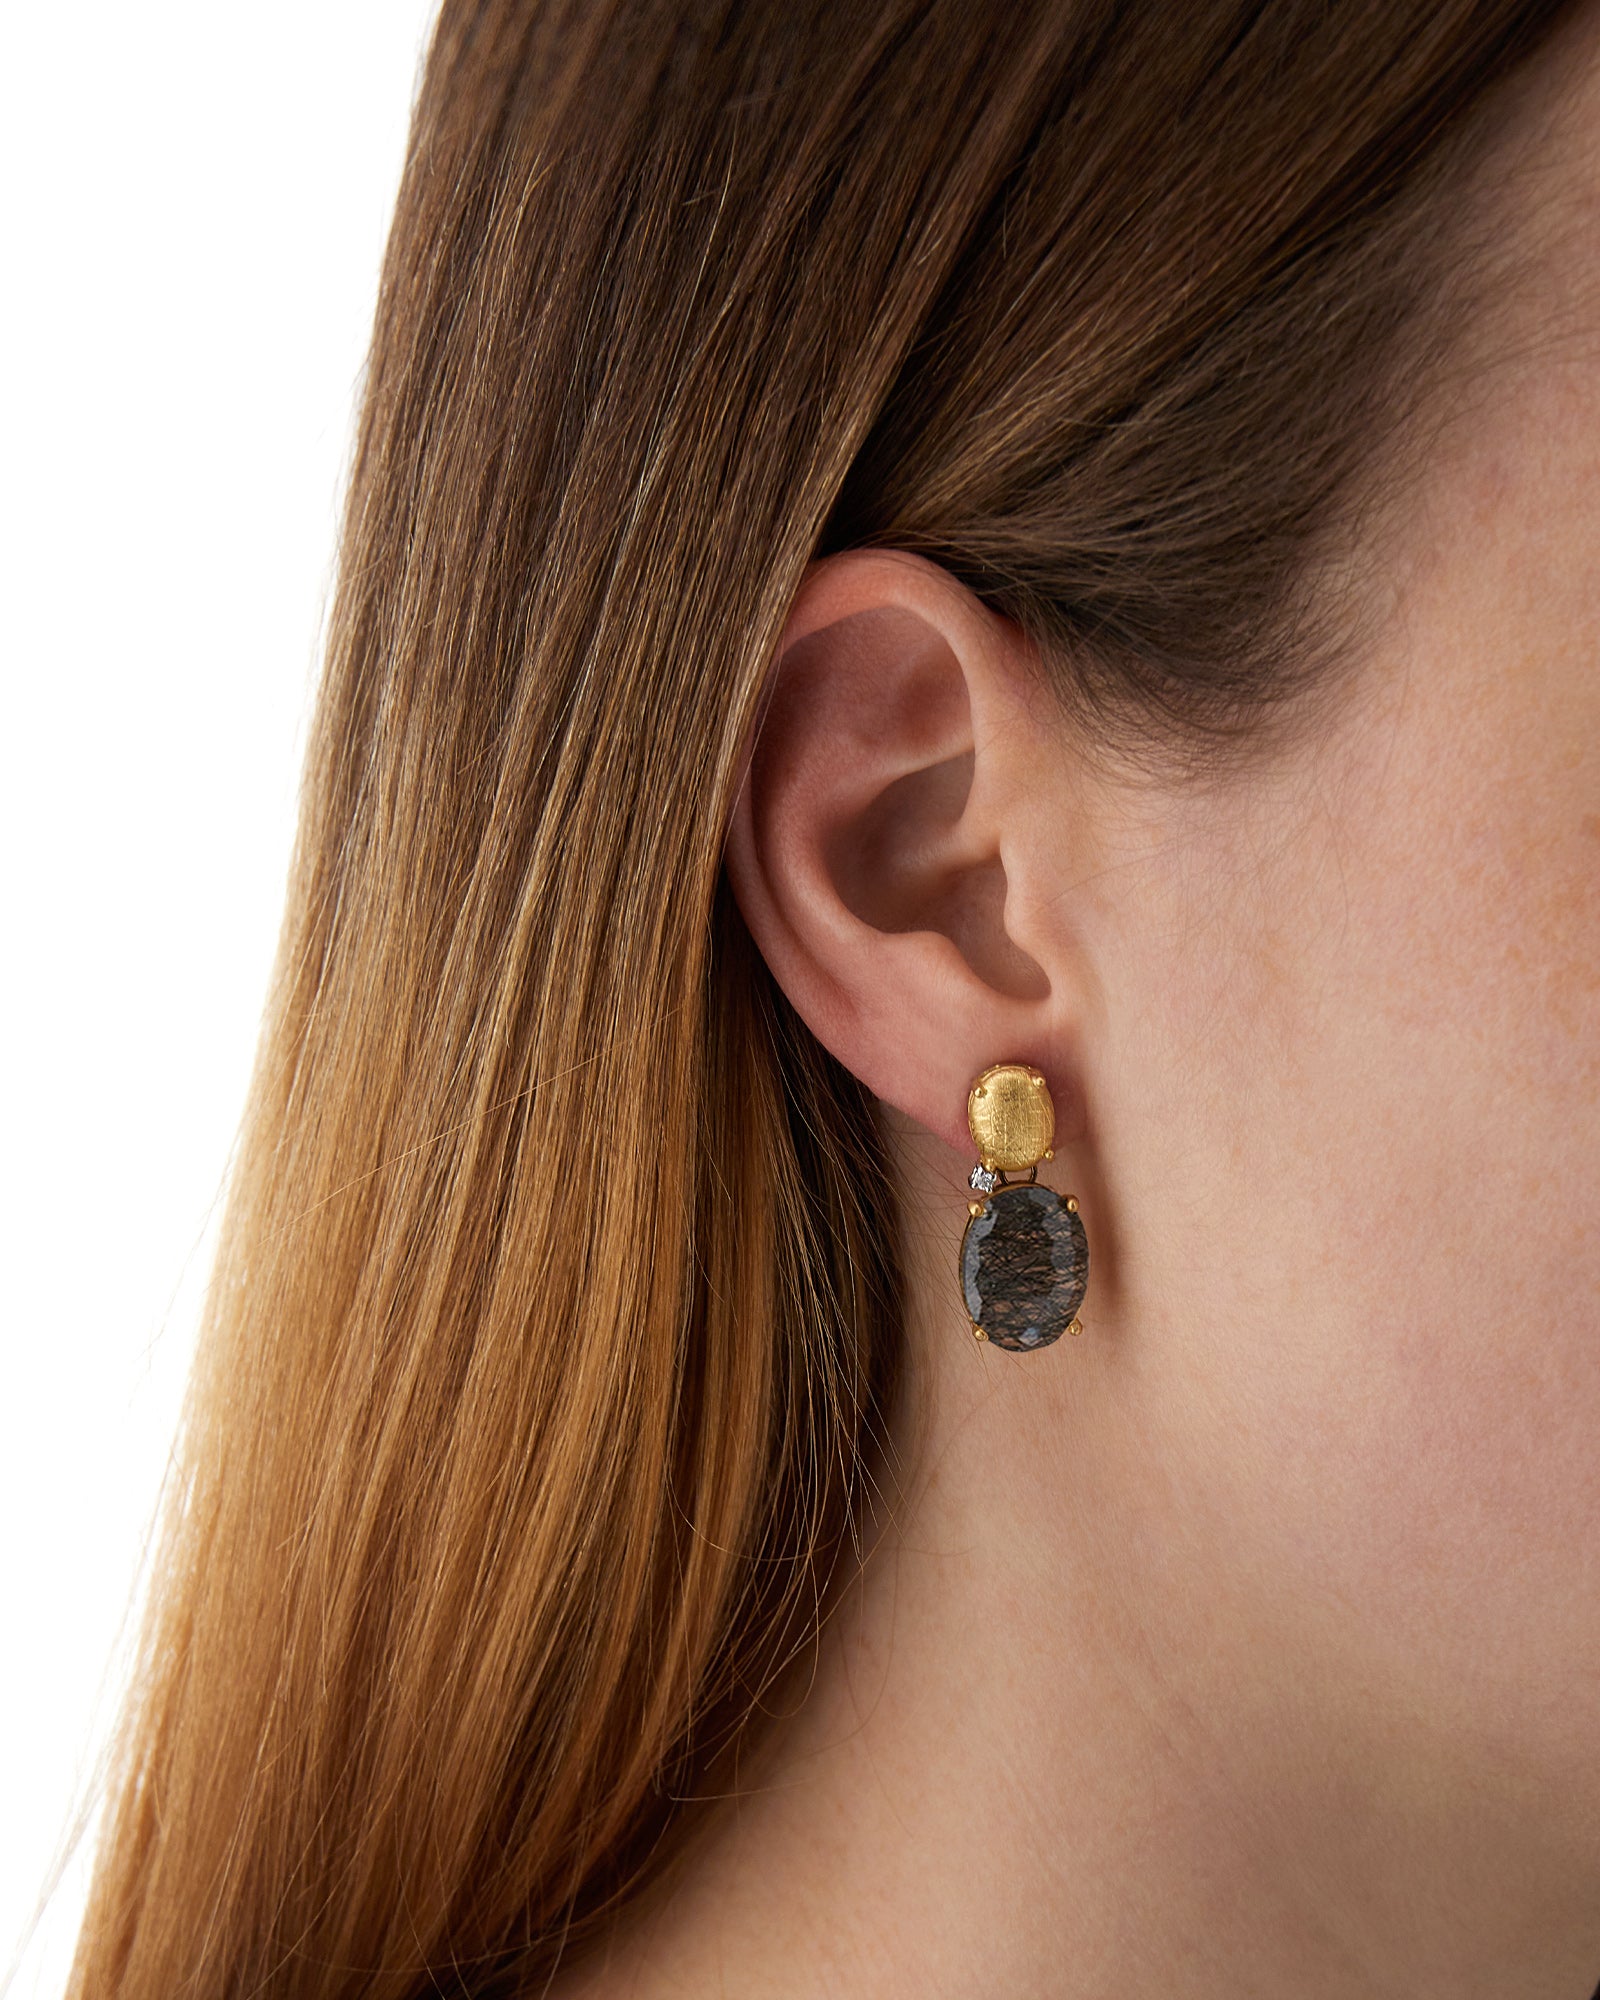 "Ipanema" grey rutilated quartz earrings